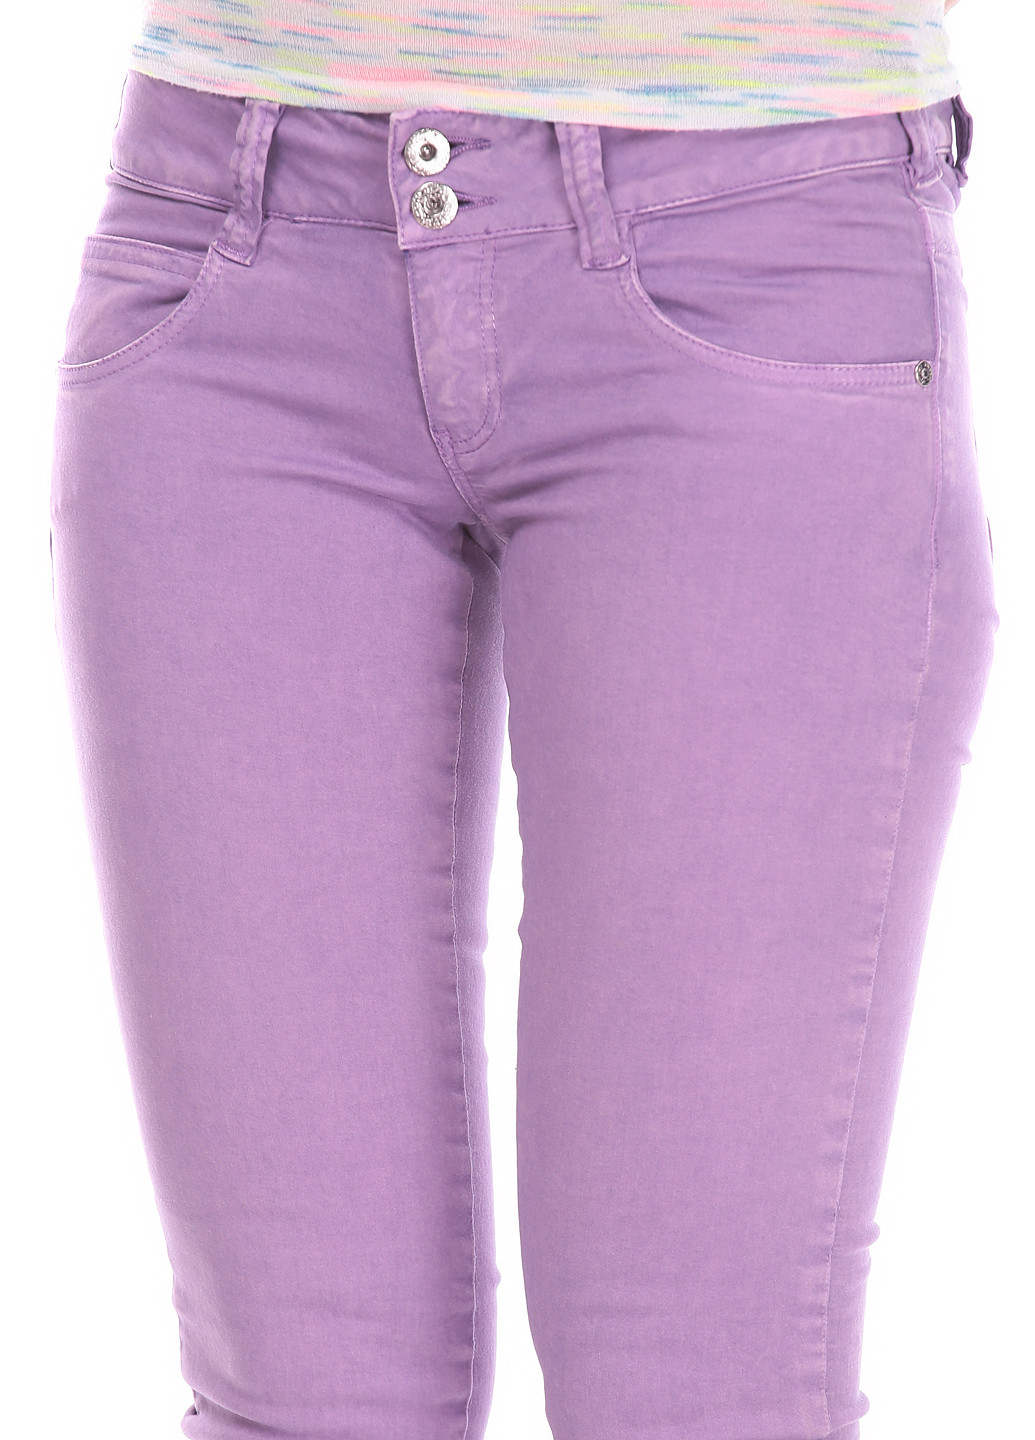 Сиреневые джинсовые летние прямые брюки Portobello By Pepe Jeans